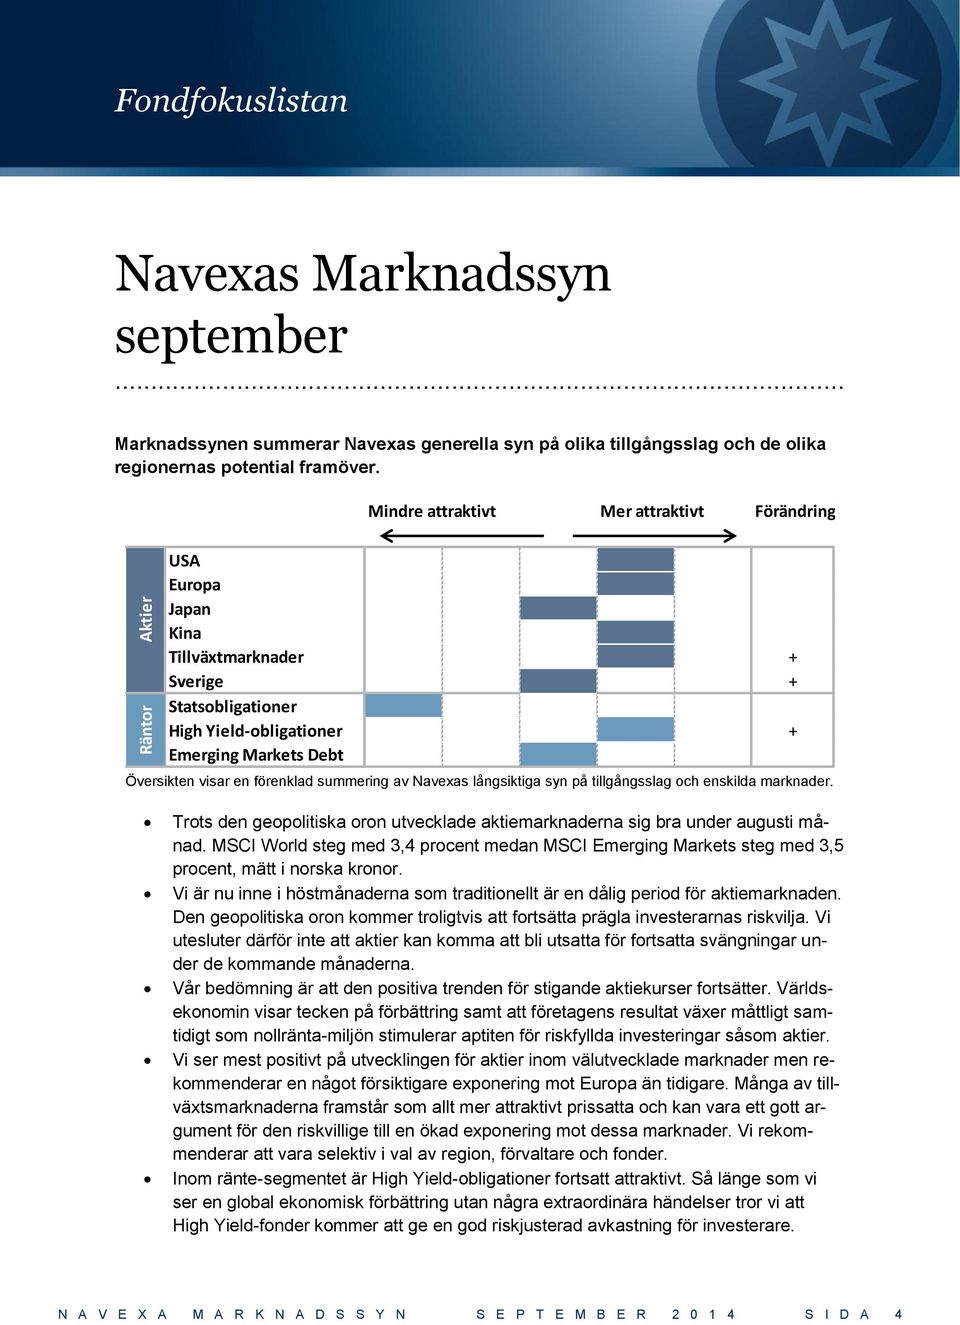 summering av Navexas långsiktiga syn på tillgångsslag och enskilda marknader. Trots den geopolitiska oron utvecklade aktiemarknaderna sig bra under augusti månad.